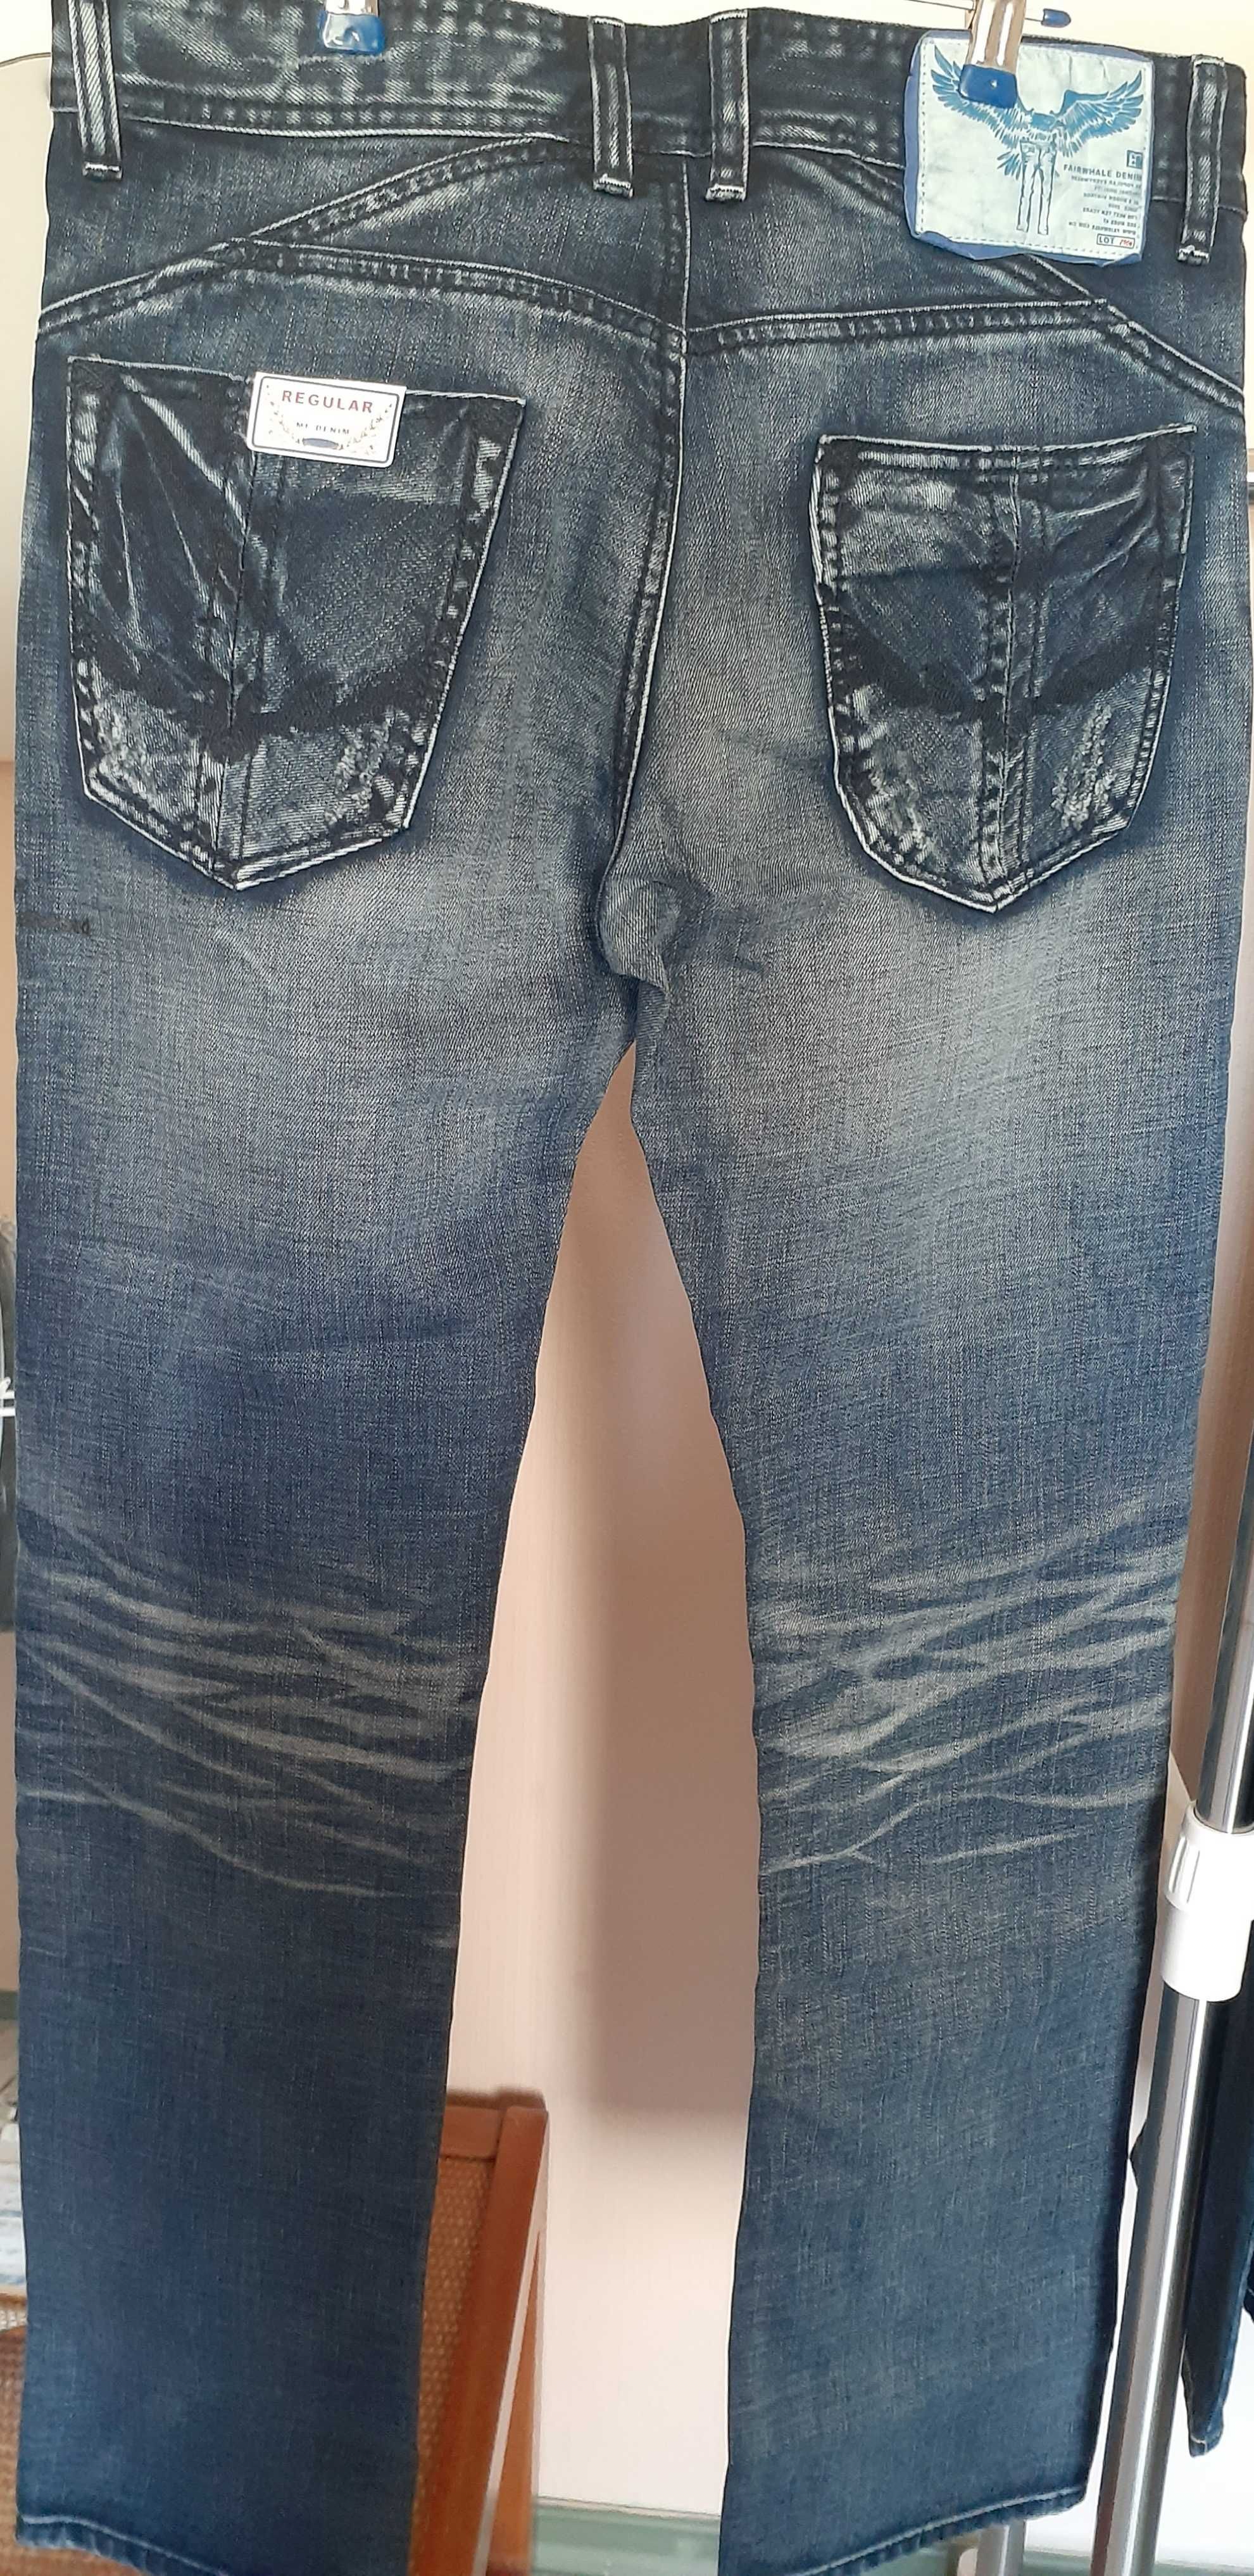 Суперстильные джинсы от Mark FAIRWHALE, осталось несколько брюк!